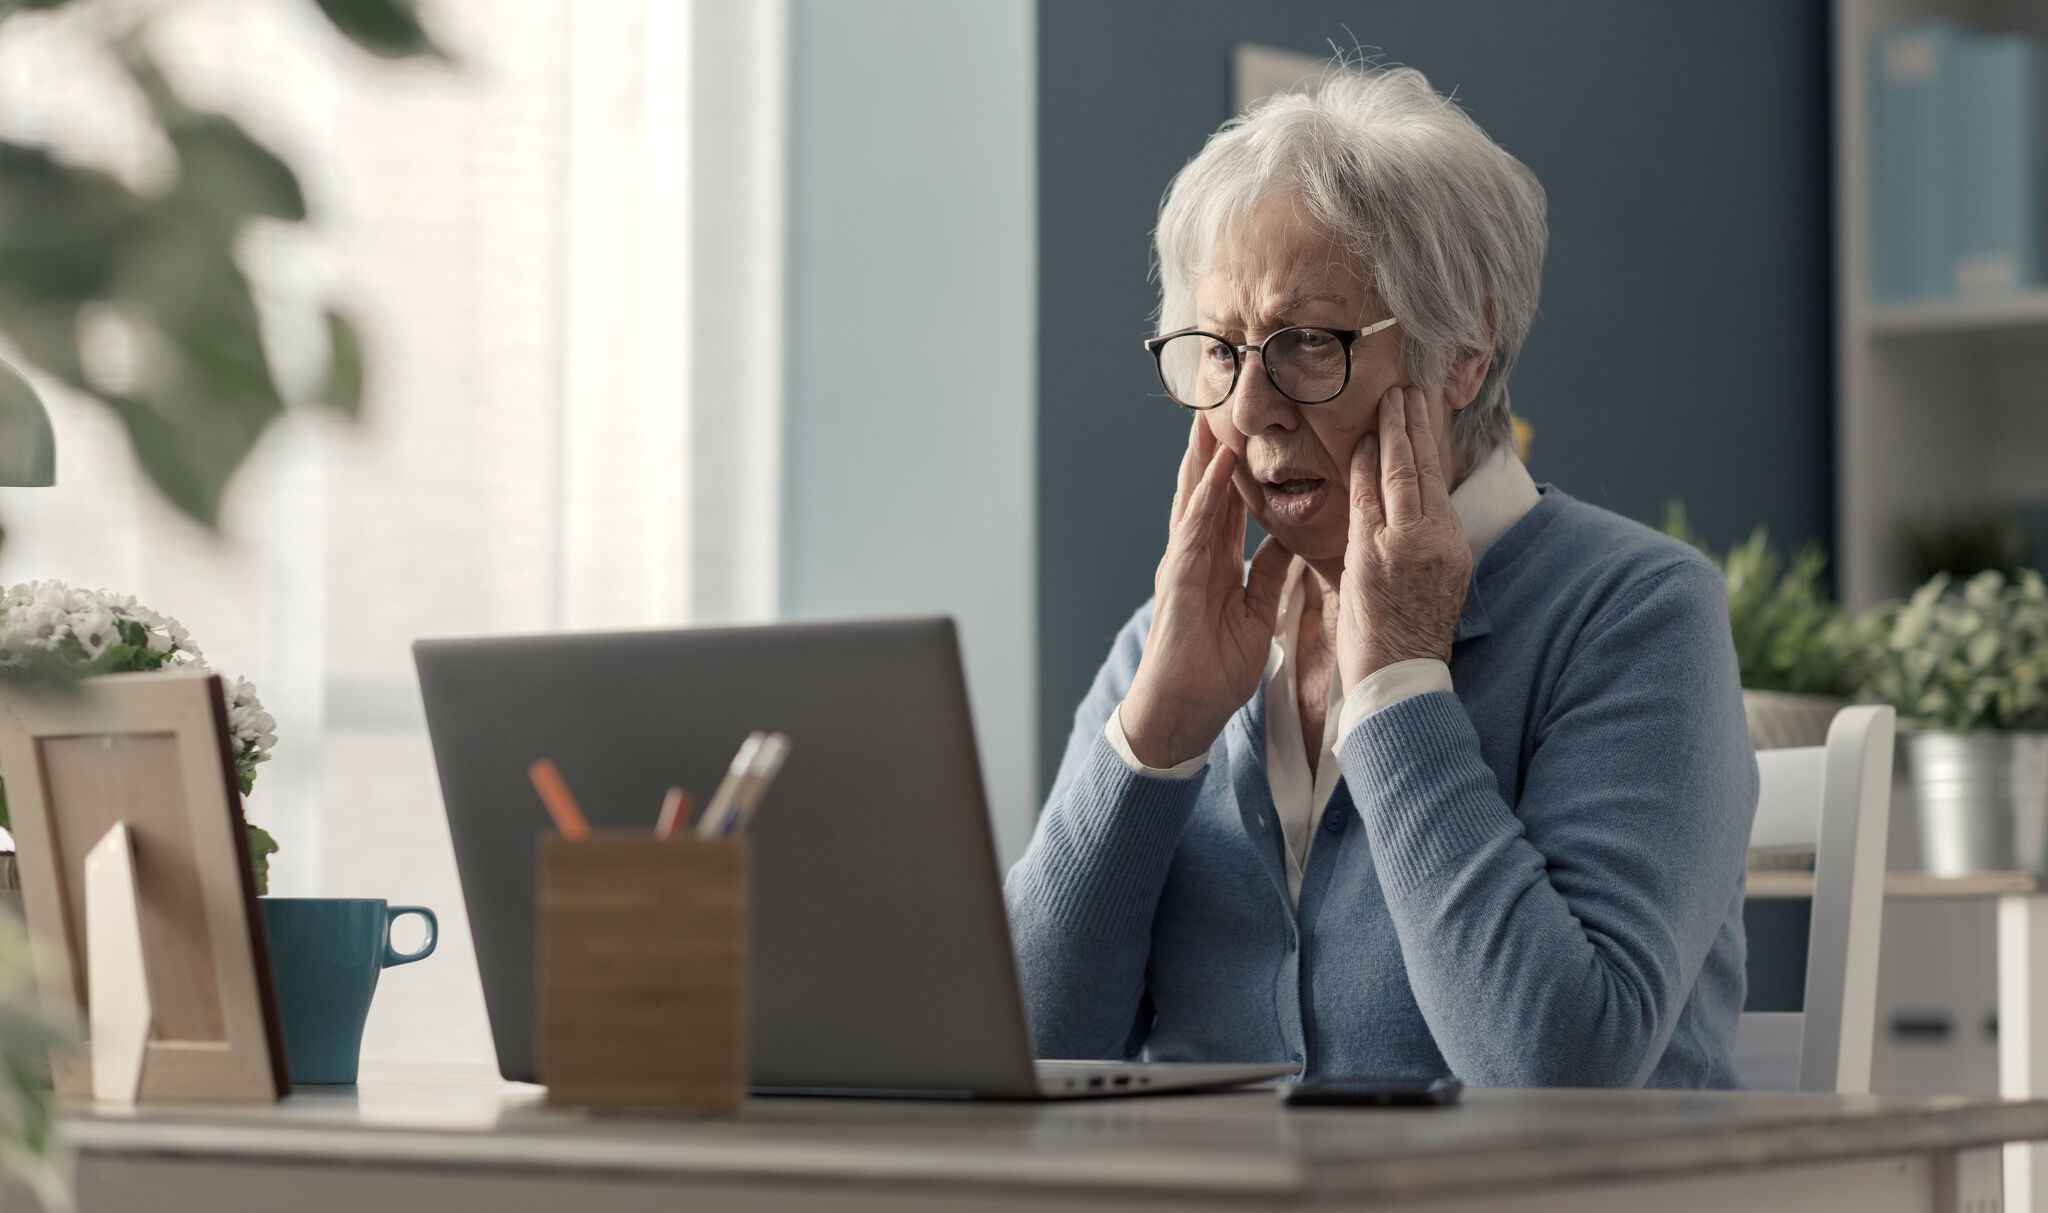 Online Scams Target Vulnerable Older Adults